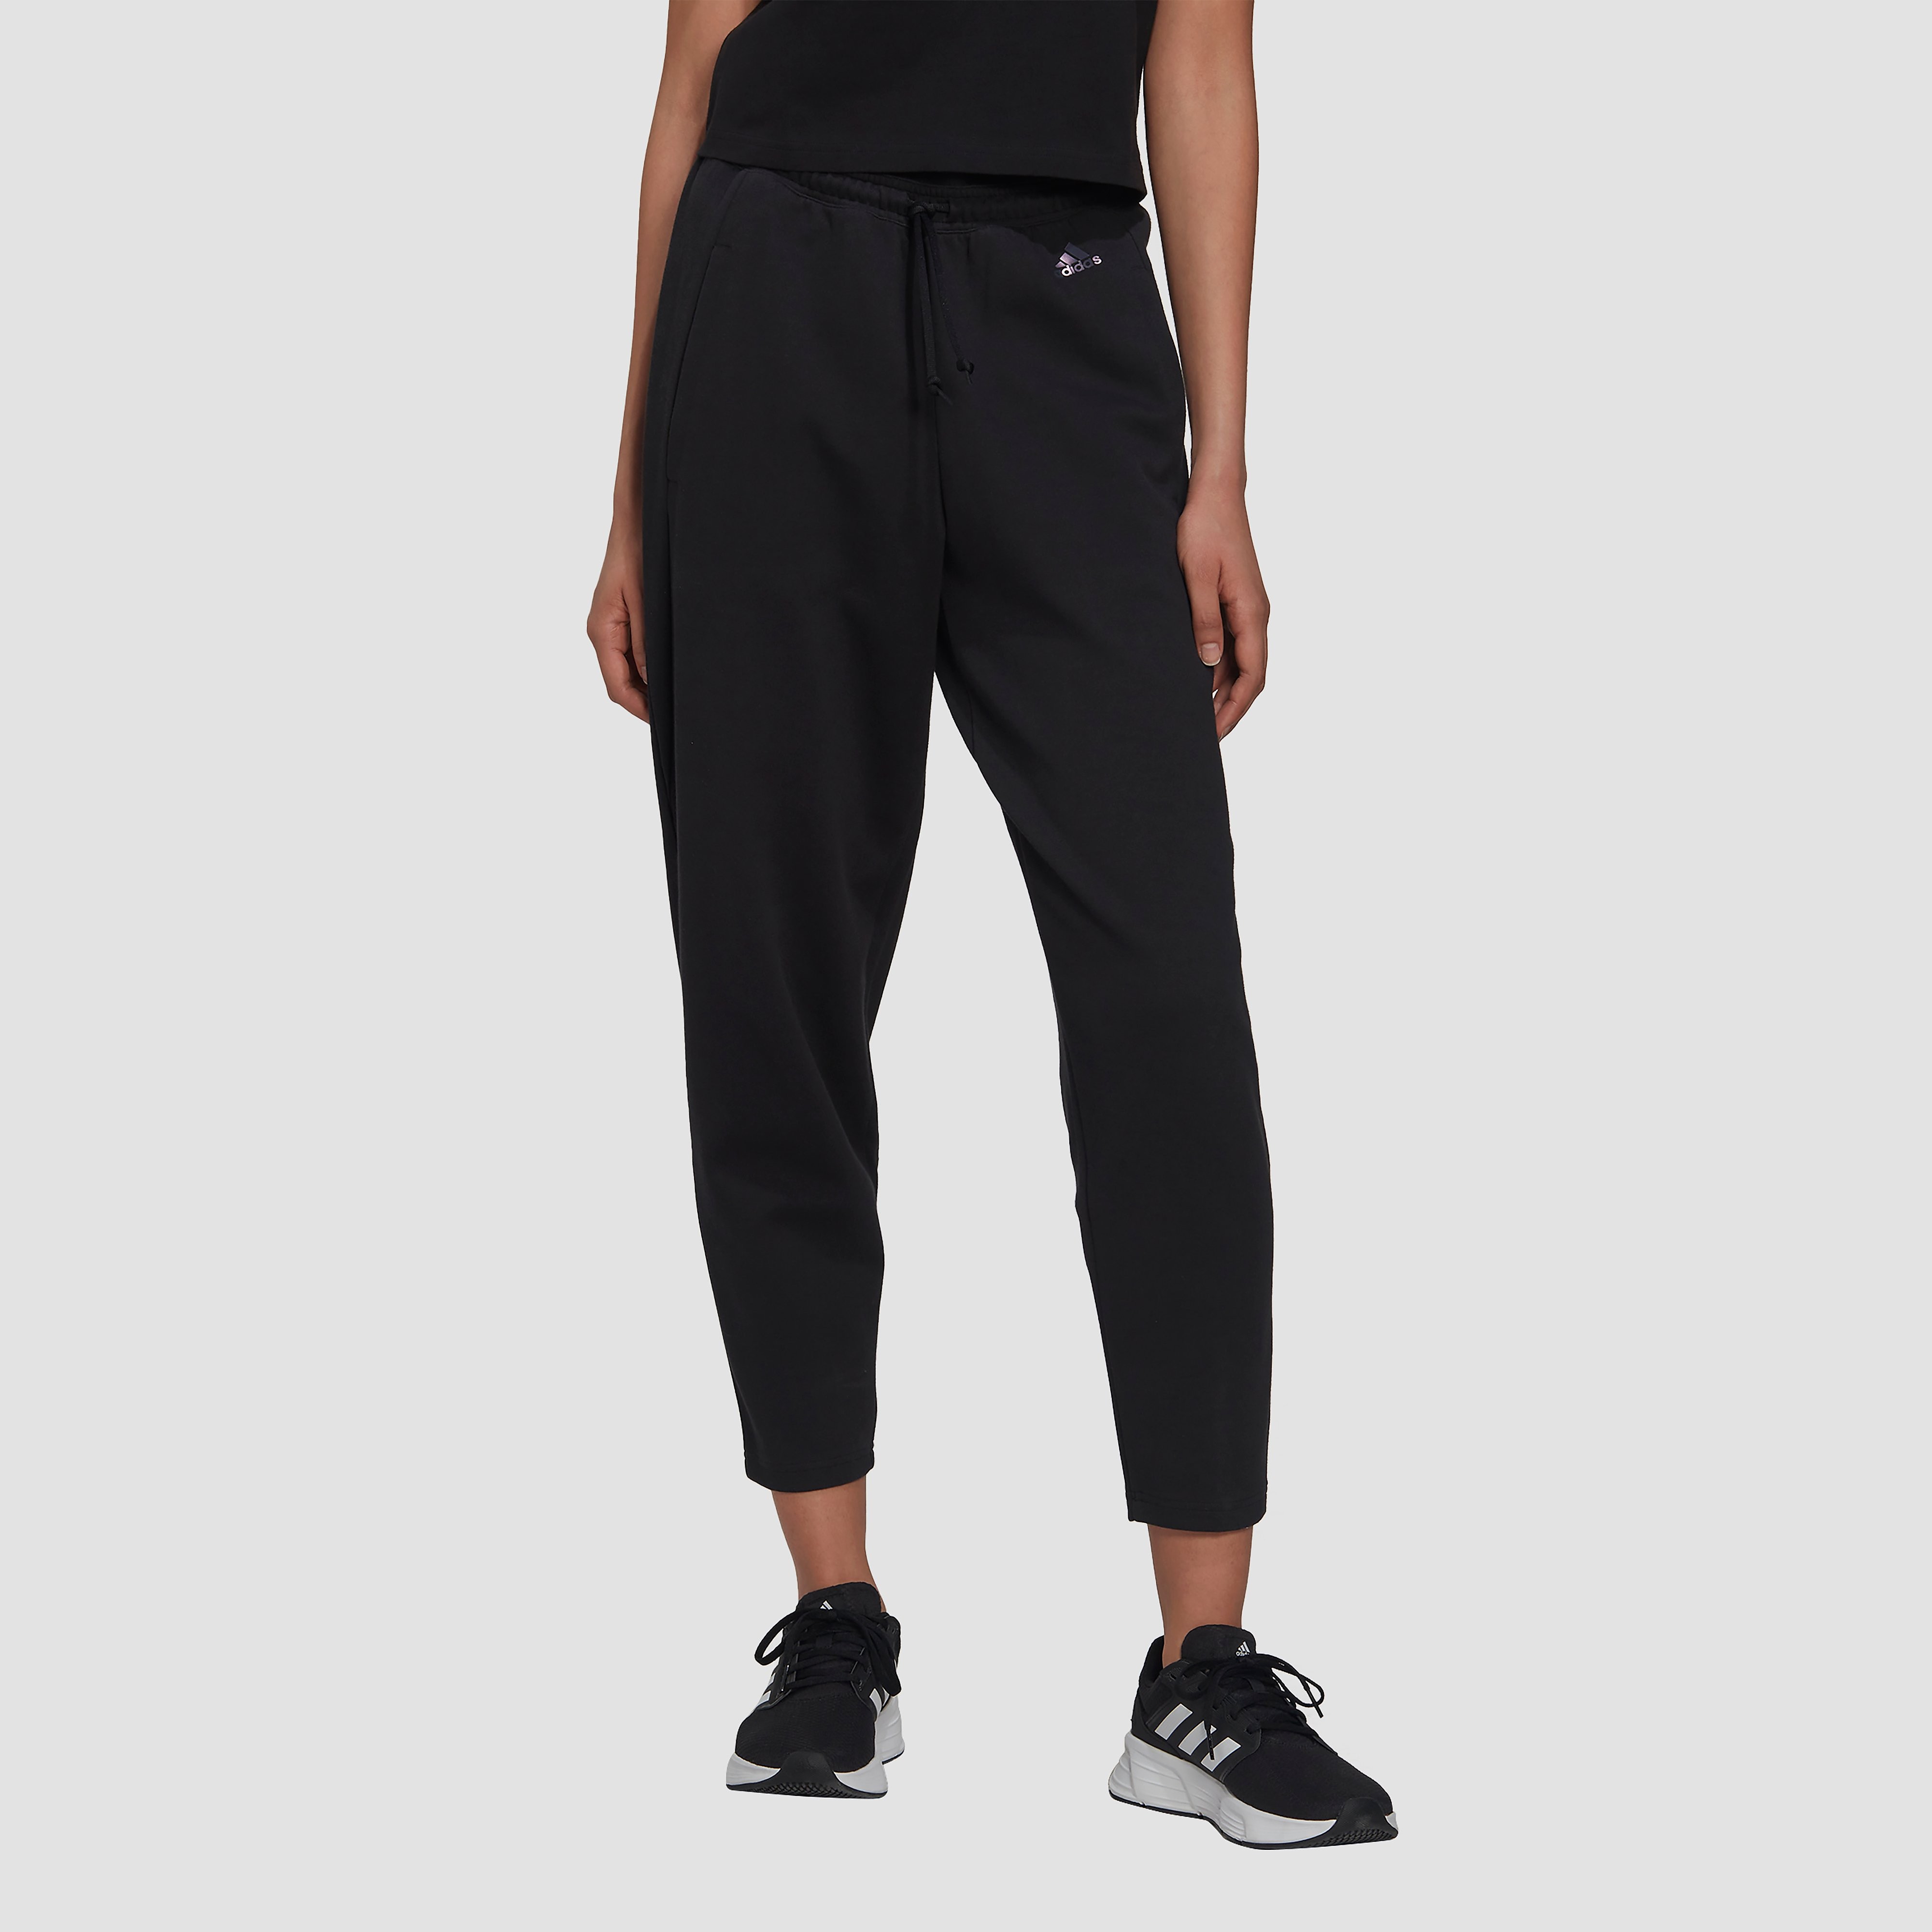 adidas All Over Print Floral Pant - Sportbroeken - zwart - Vrouwen